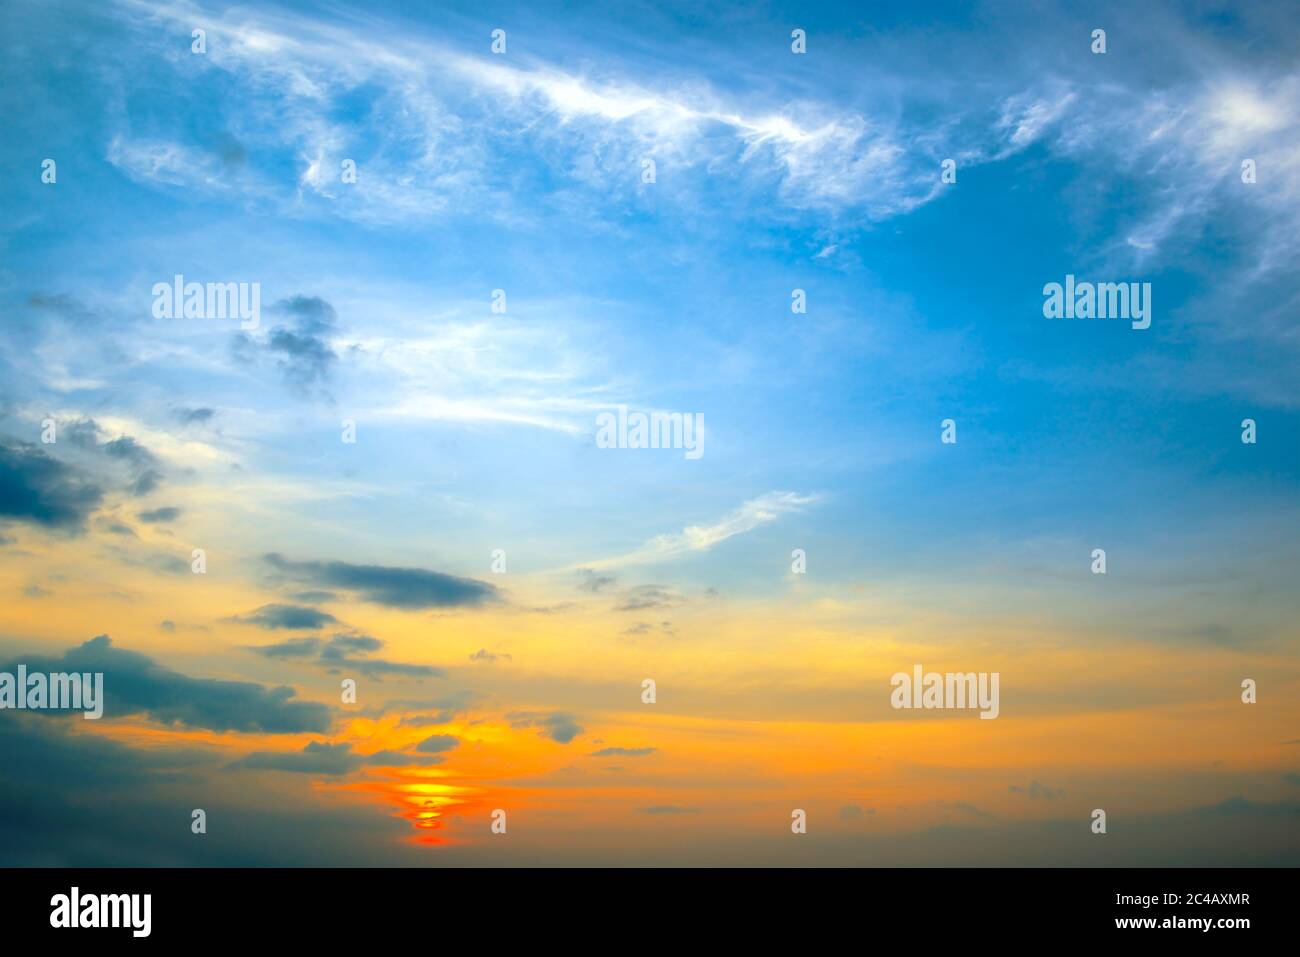 Panorama-Foto Frühling Sonnenuntergang mit blauen Himmel, weißen Wolken und roter Sonne. Stockfoto